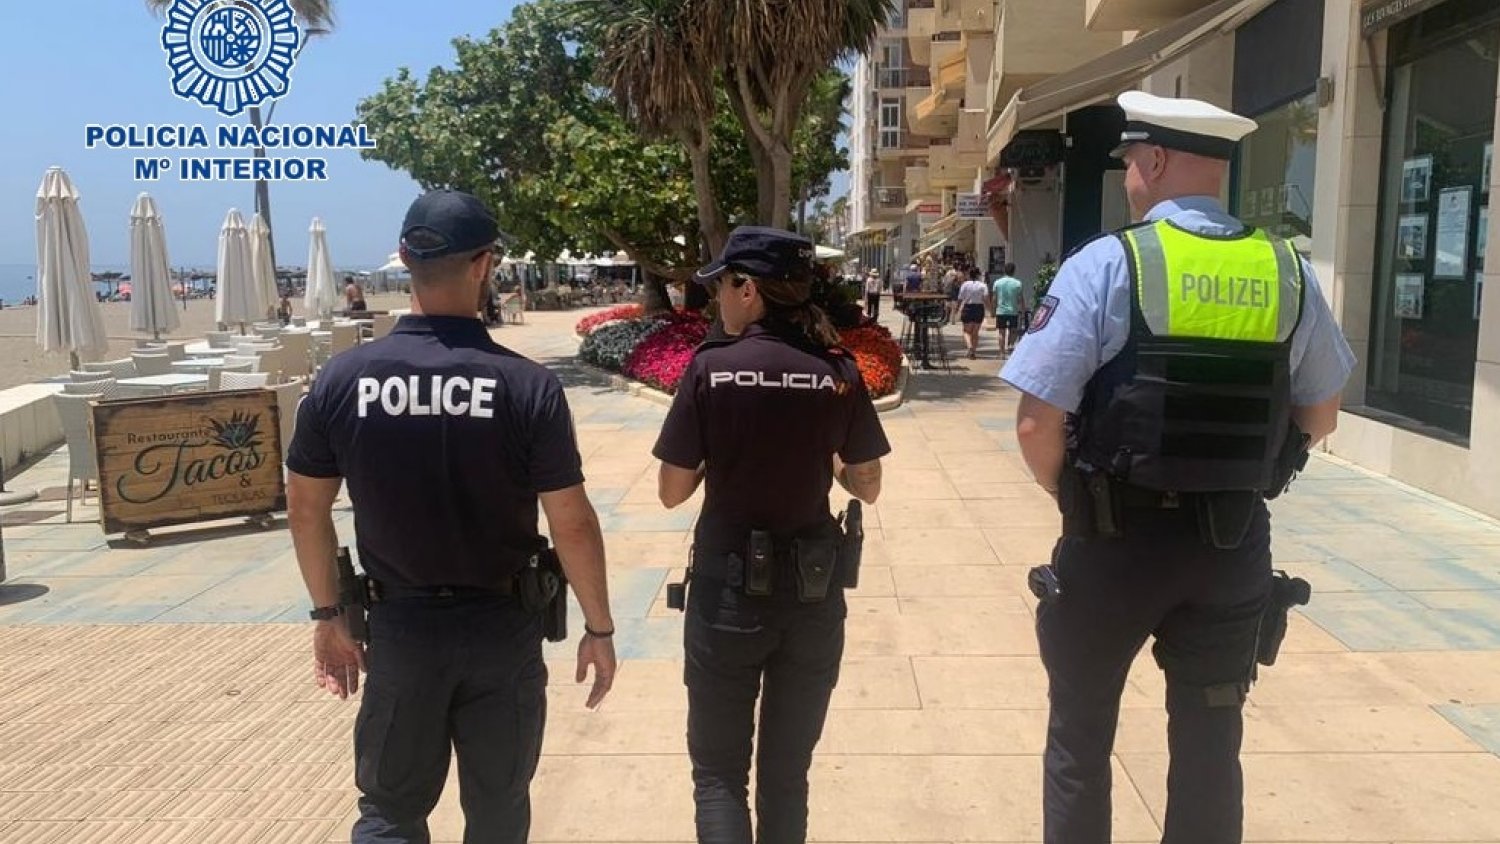 La Policía Nacional junto a la de Francia y Alemania patrullan en Estepona para reforzar la seguridad de los turistas